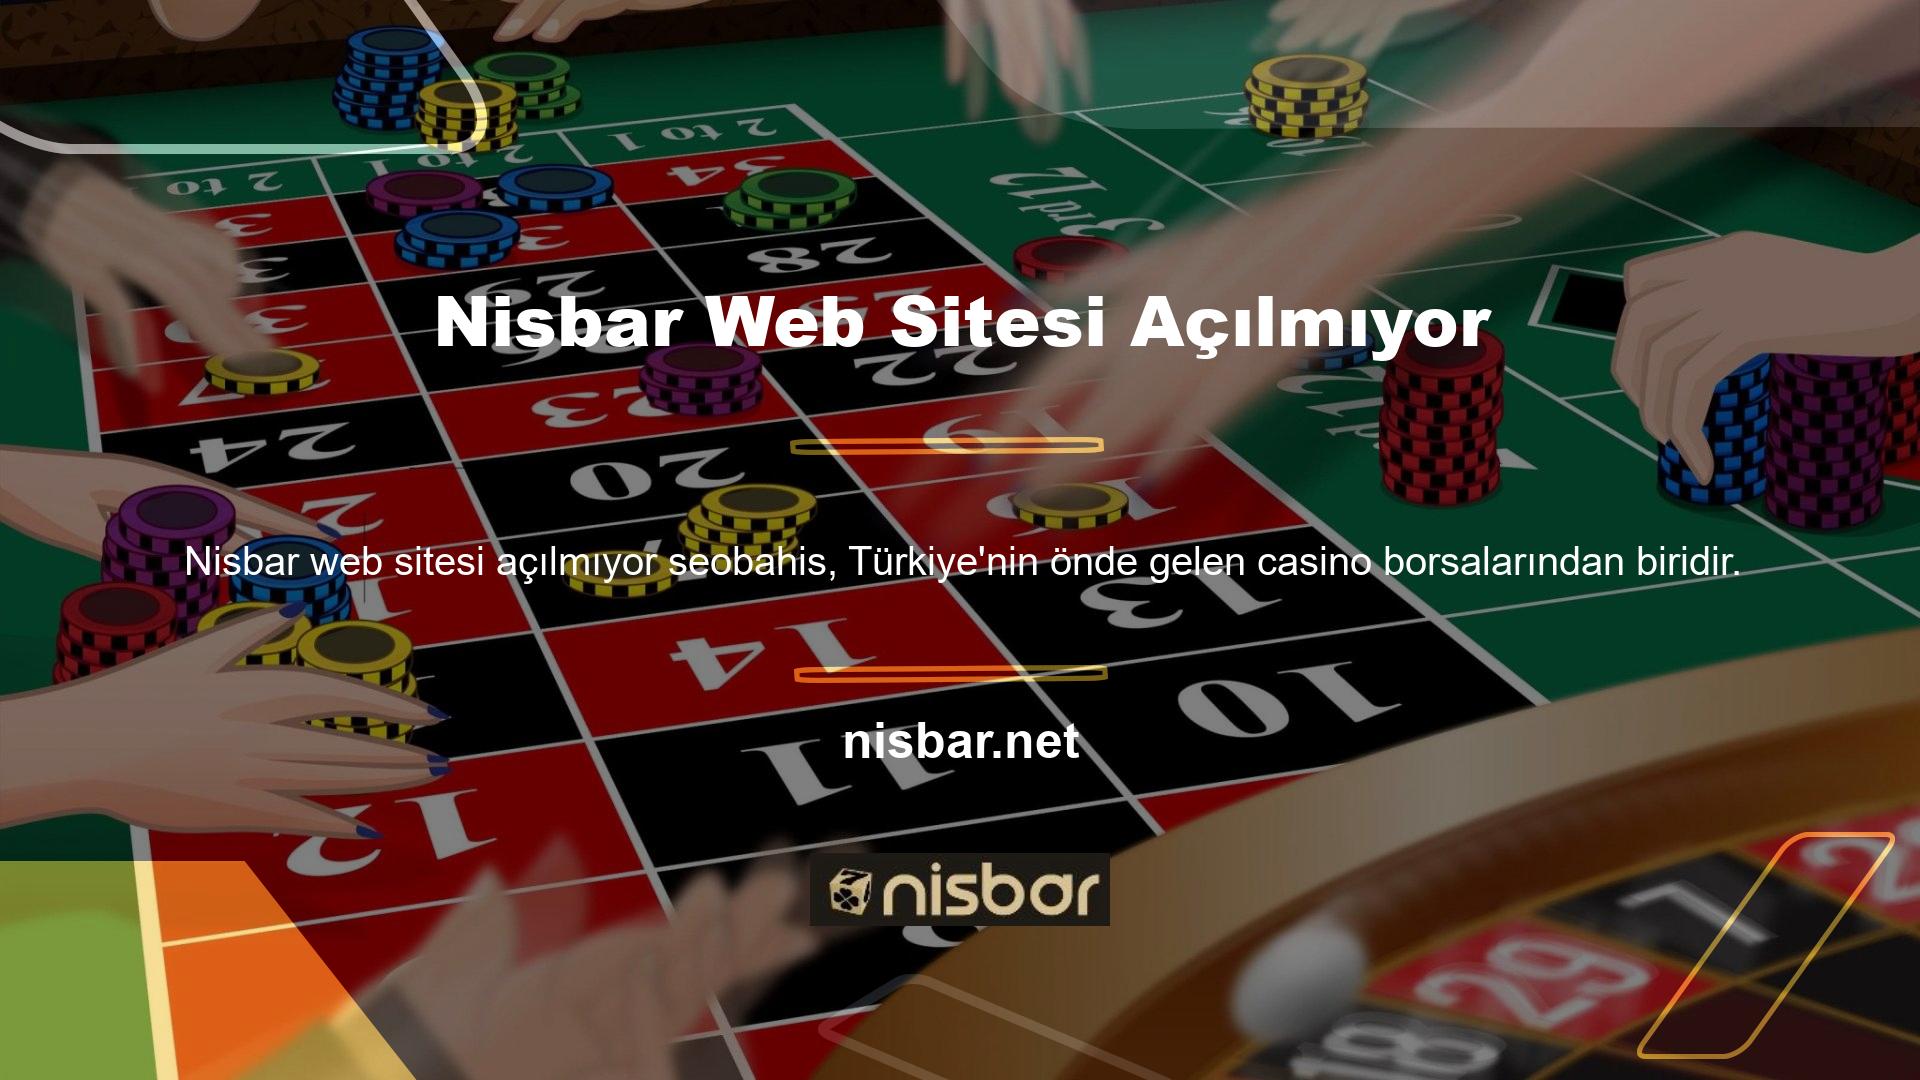 Nisbar, dürüst ve adil casino hizmetleri anlayışıyla Türk müşterilerinin ve son zamanlarda yabancı kullanıcıların dikkatini çekmiştir